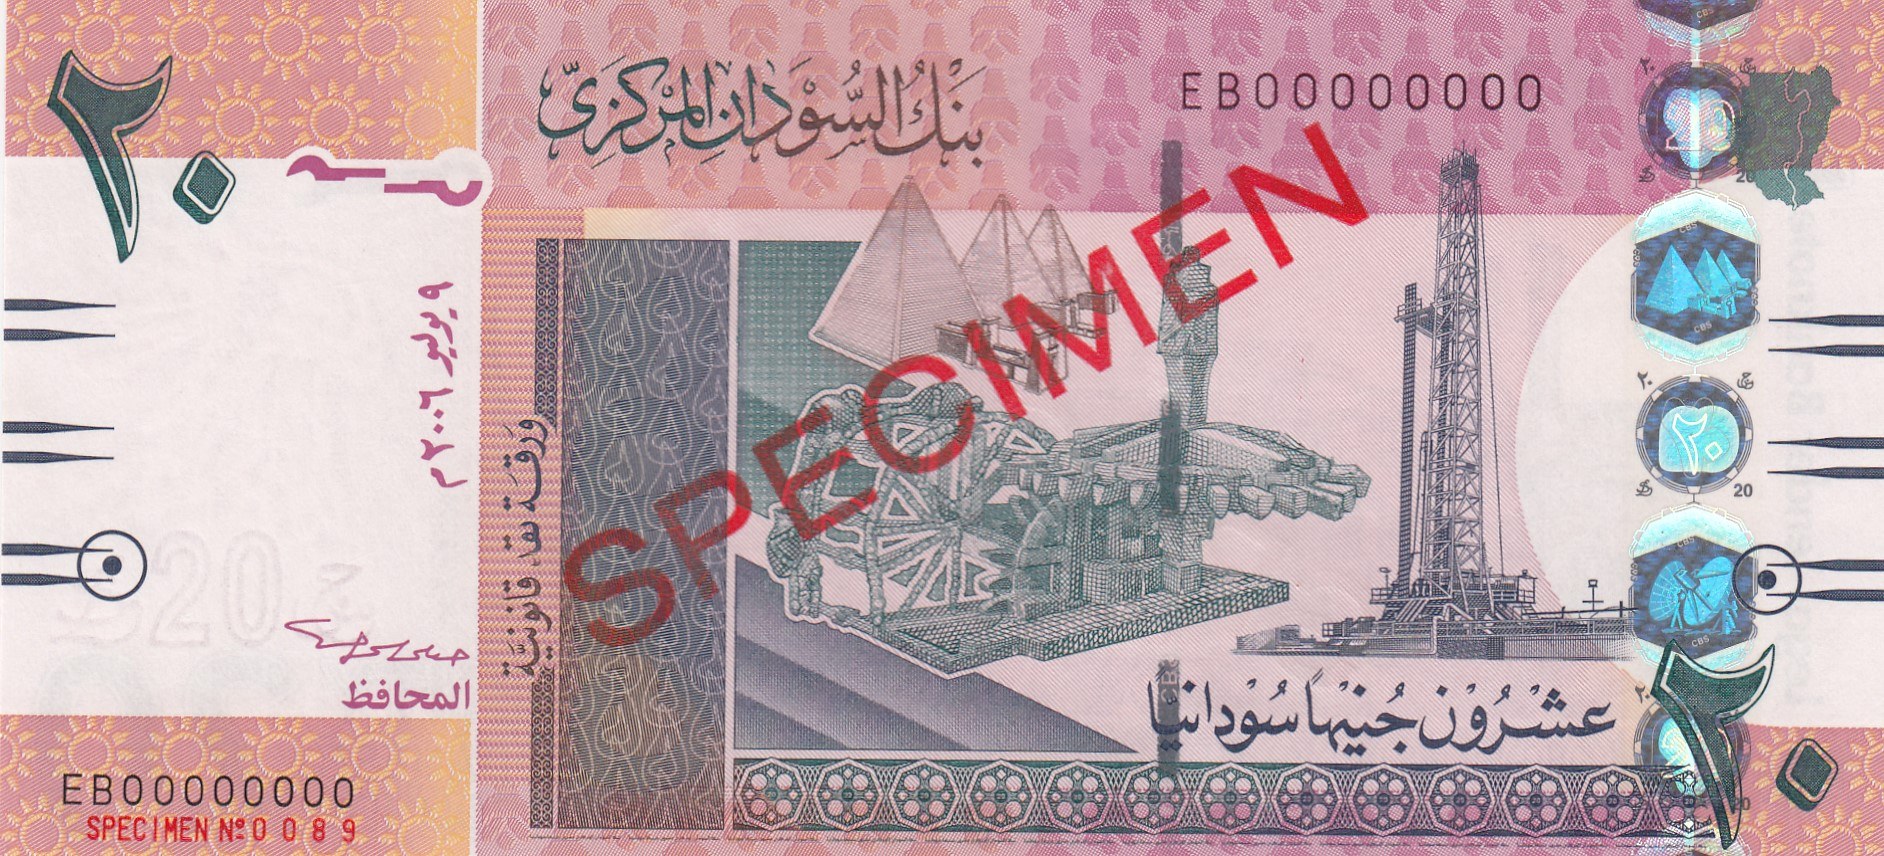 Купюры мм. Бумажные деньги Судана. Суданский фунт банкноты. Банкнота 20 фунтов Судан. 20 Фунтов 2006 года.